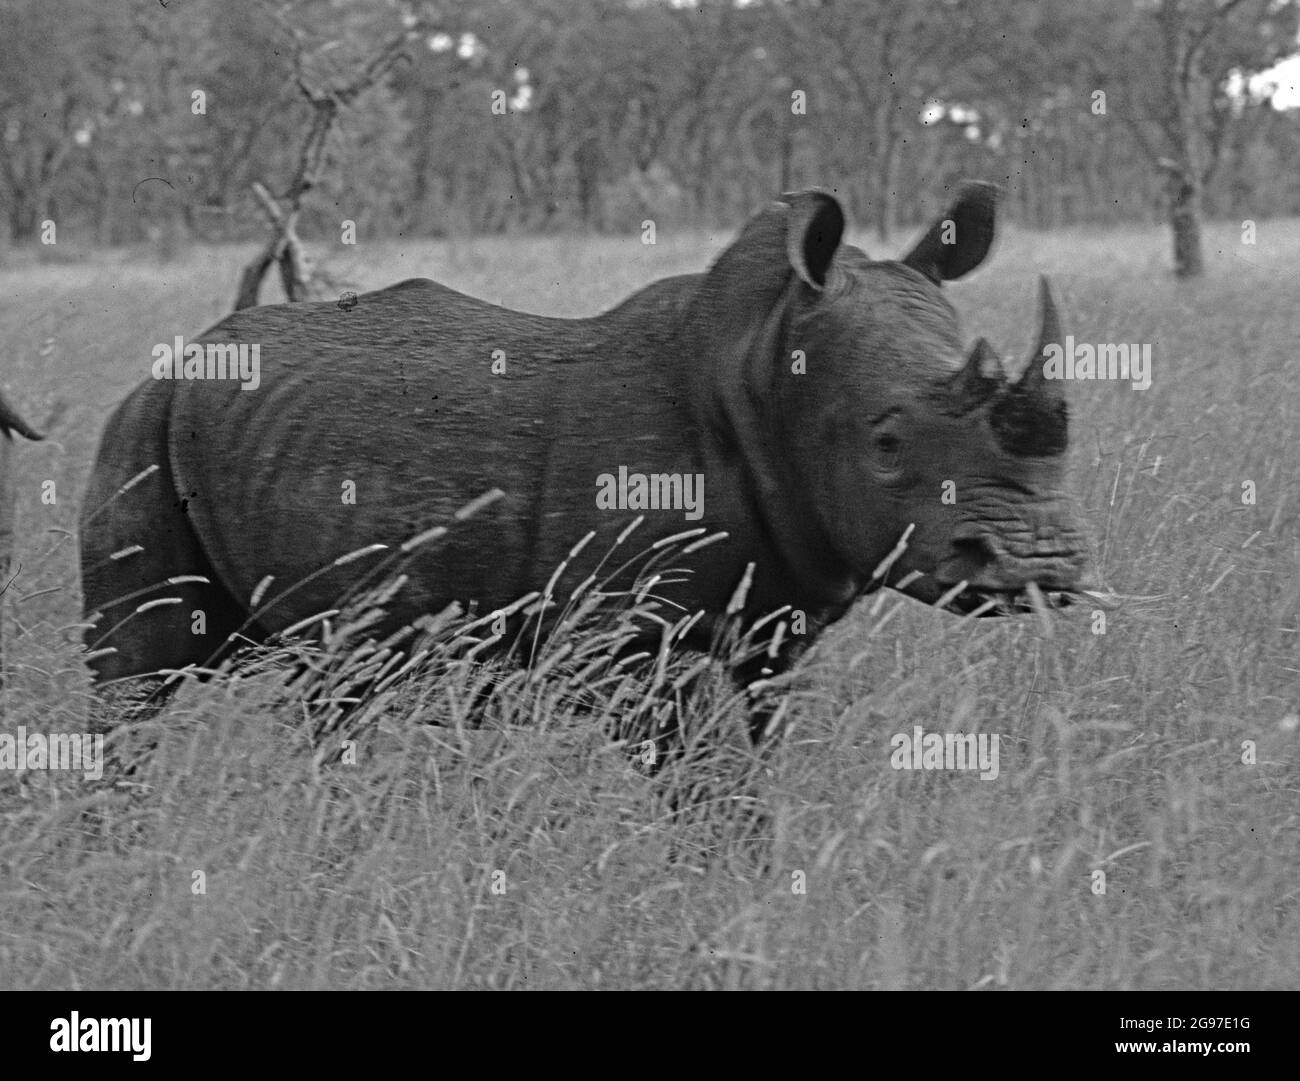 Specie minacciate: Un rinoceronte nella prosa Foto Stock